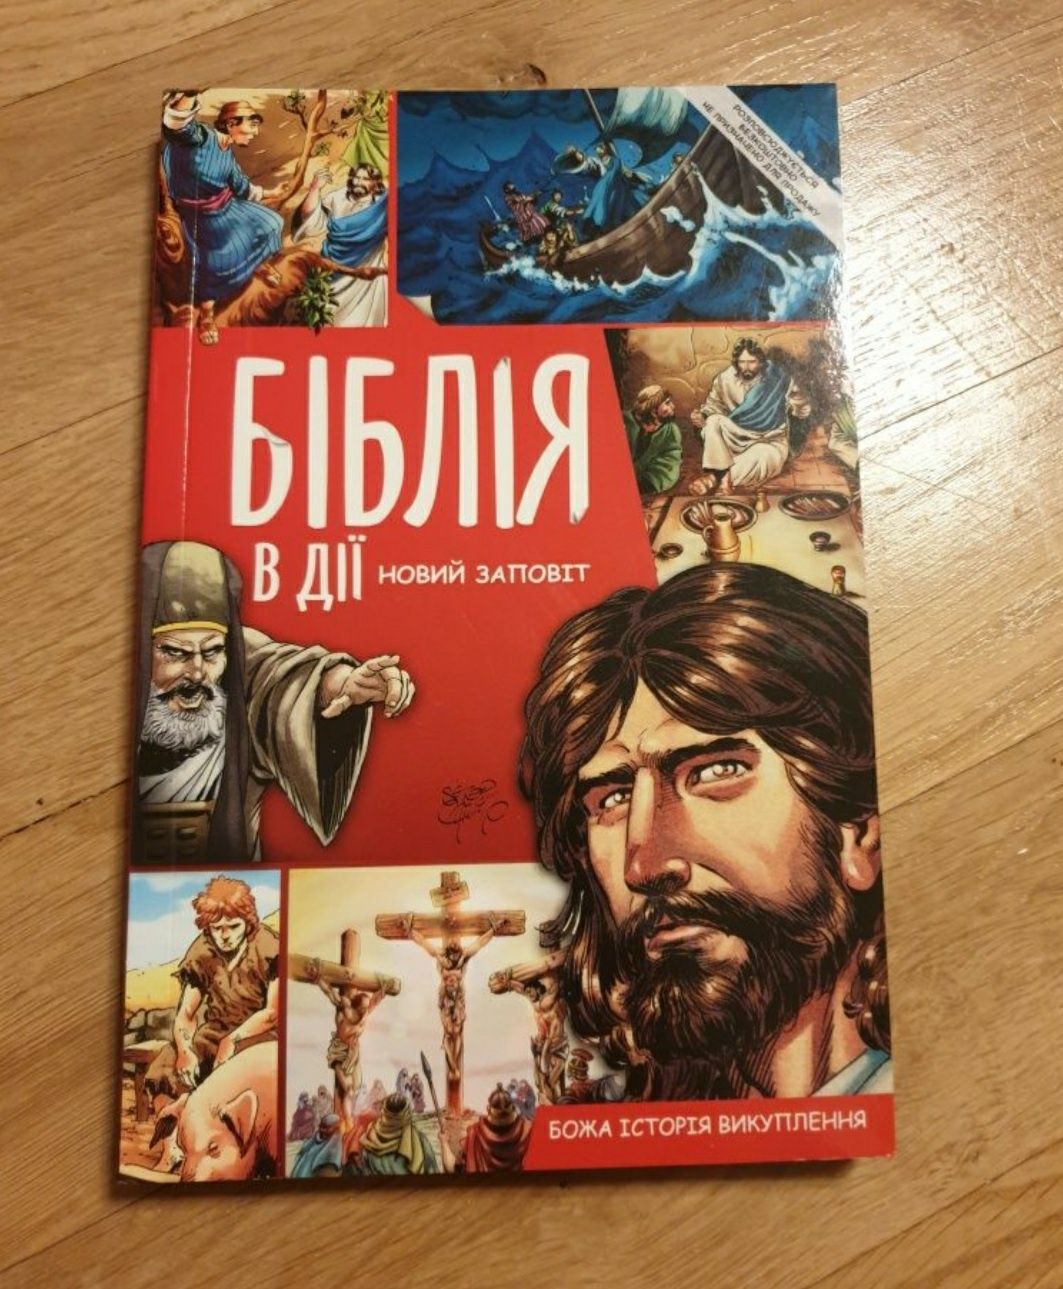 Biblia dla dzieci komiks jezyk ukraiński